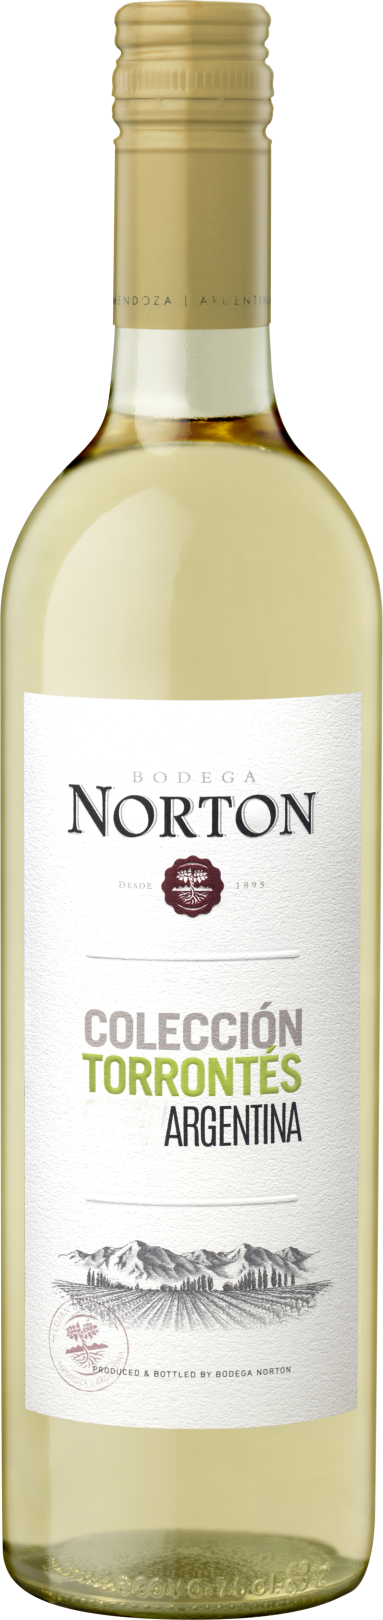 Bodega Norton Torrontés Colección